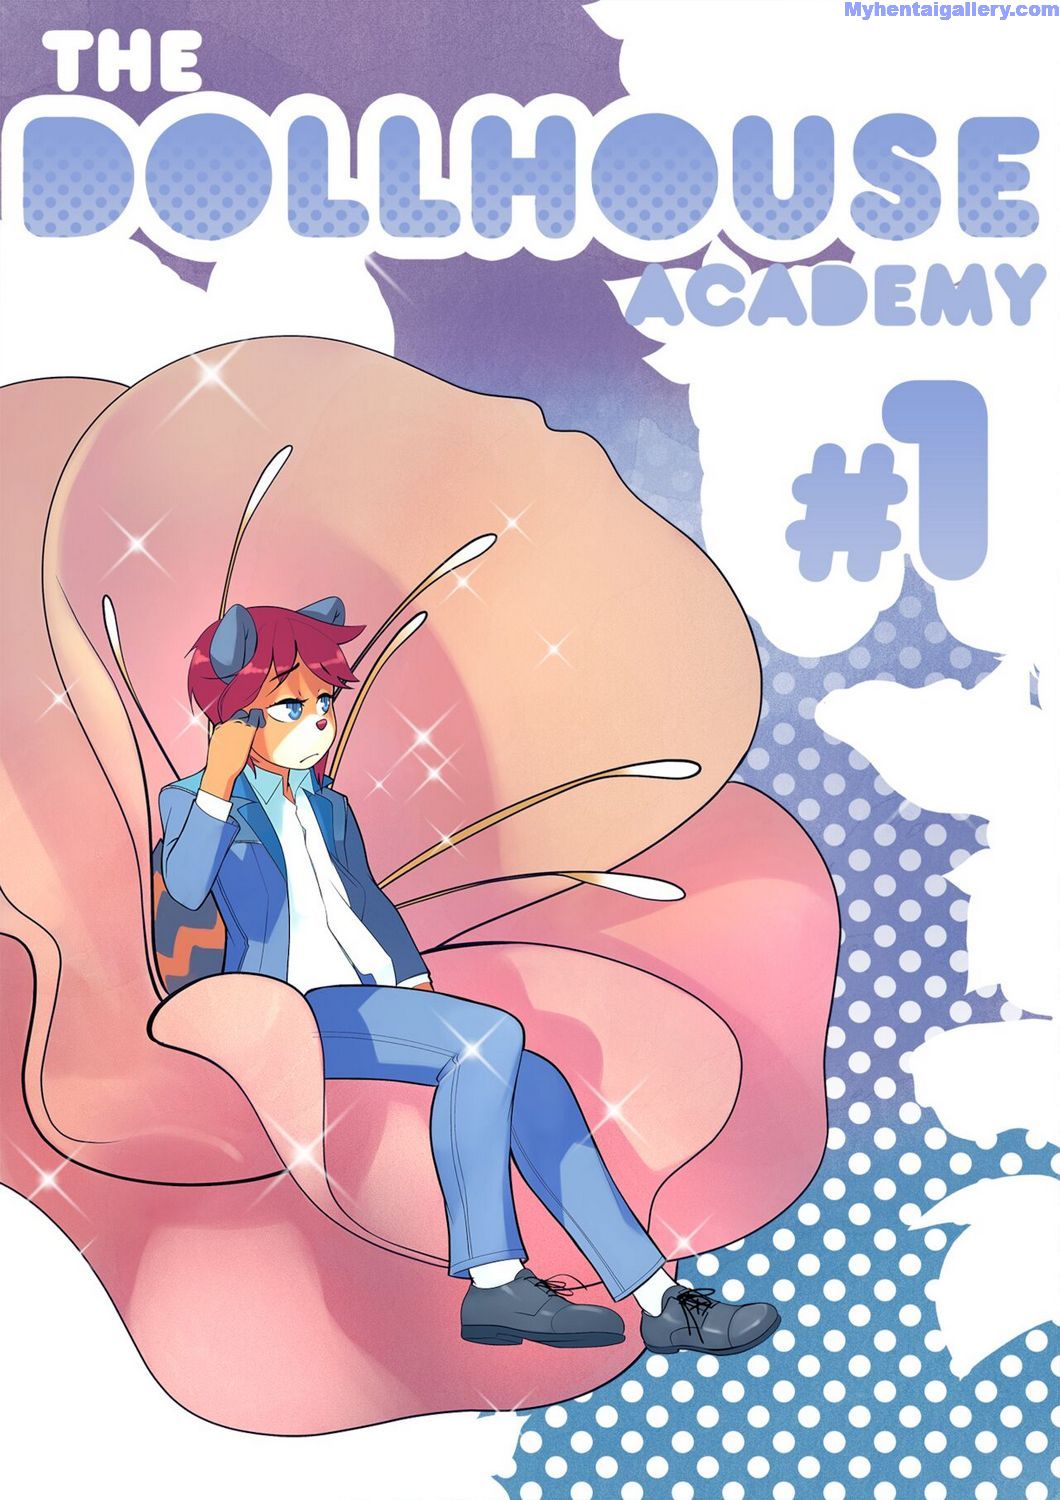 The Dollhouse Academy 1